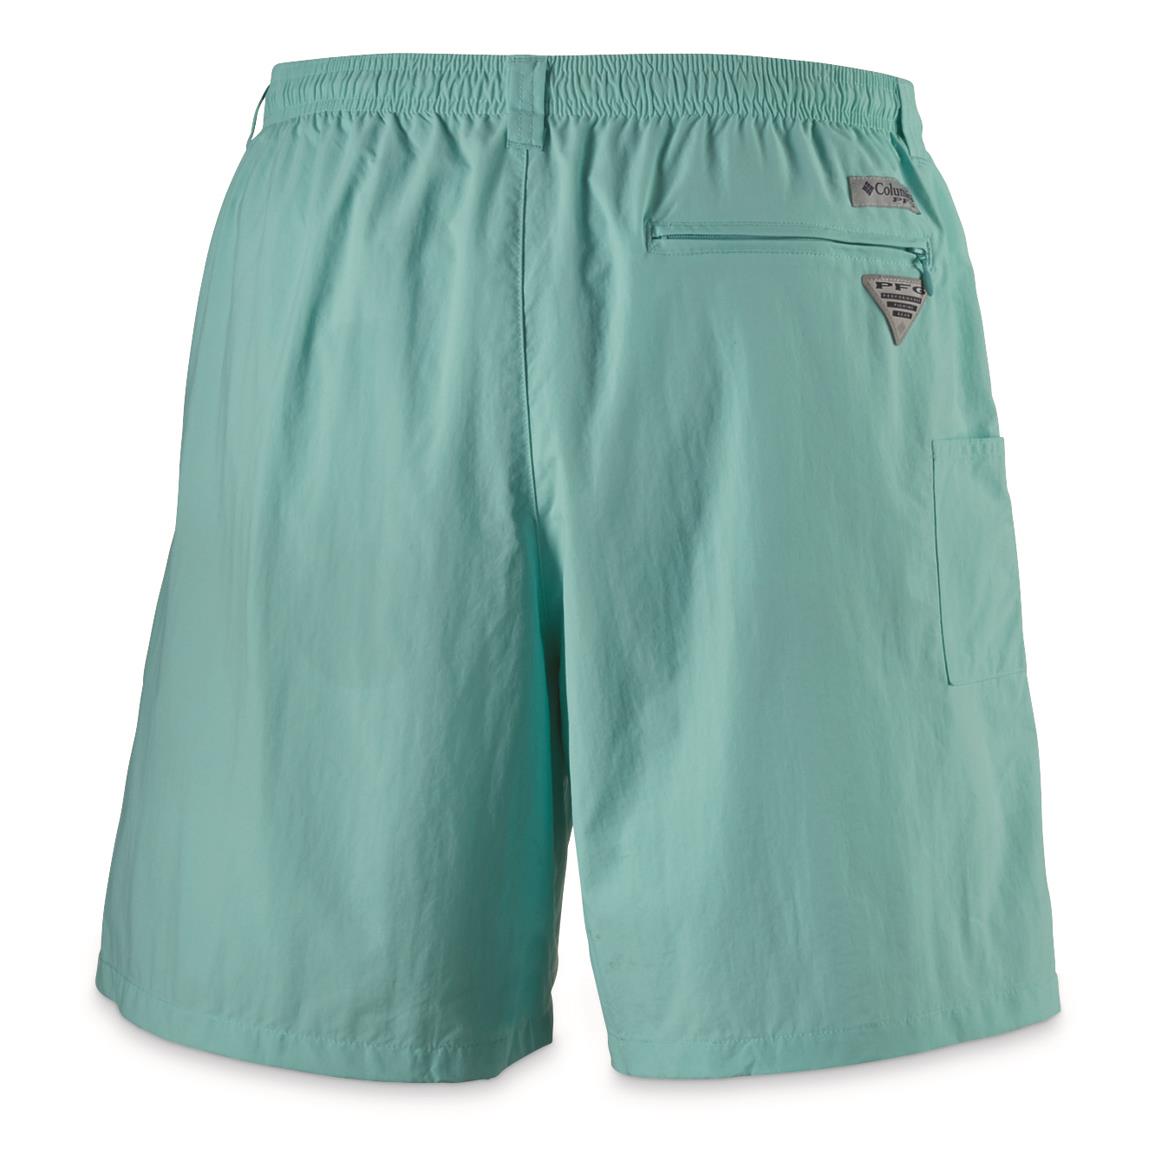 Columbia Men's PFG Backcast III Water Shorts - 703135, Shorts at ...